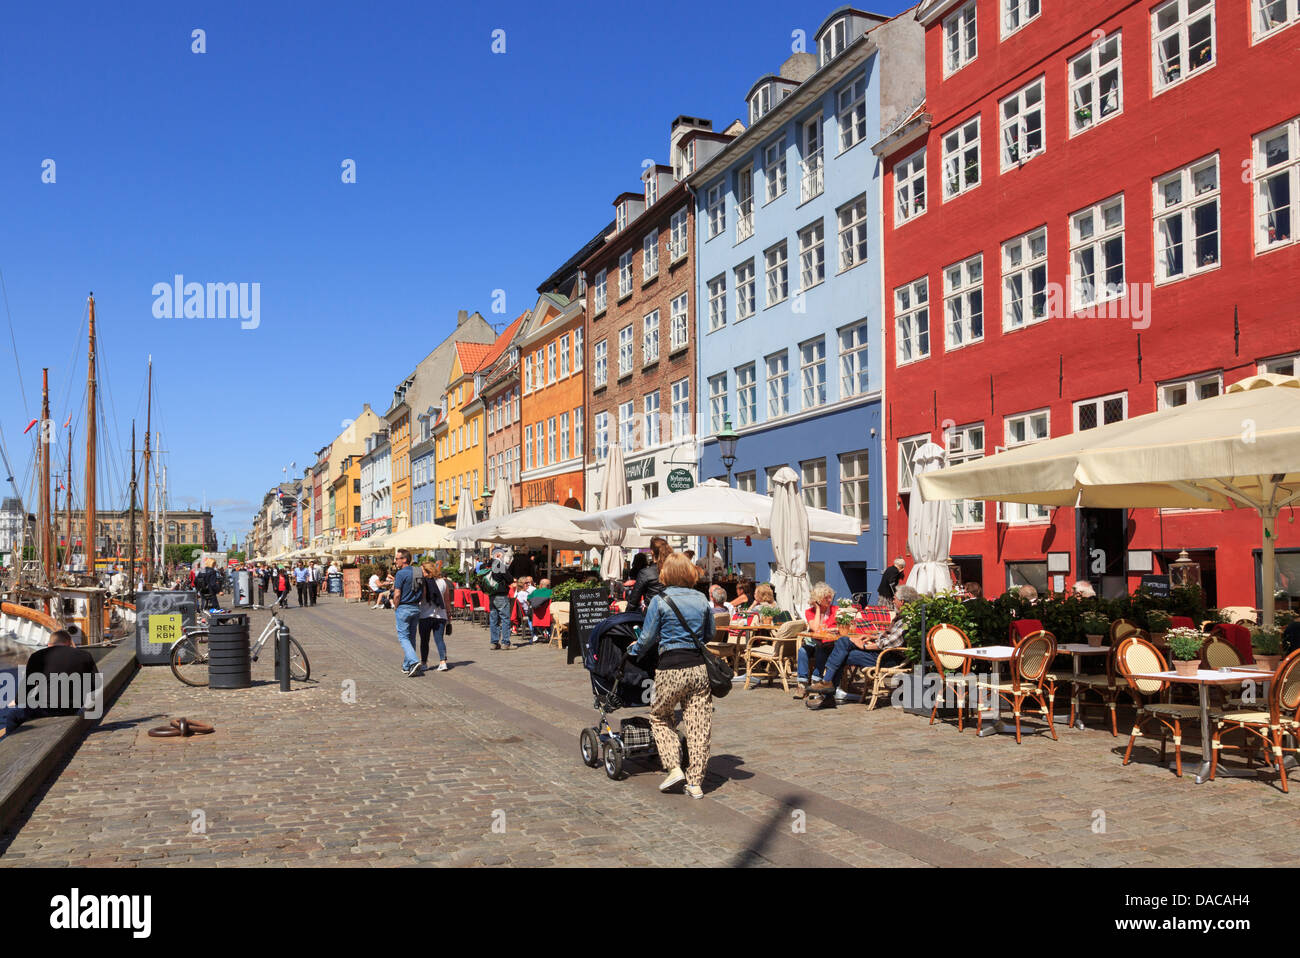 Fußgängerzone Waterfront Straße mit Straßencafés und farbenfrohen Gebäuden in Nyhavn Kopenhagen Seeland Dänemark Skandinavien Stockfoto